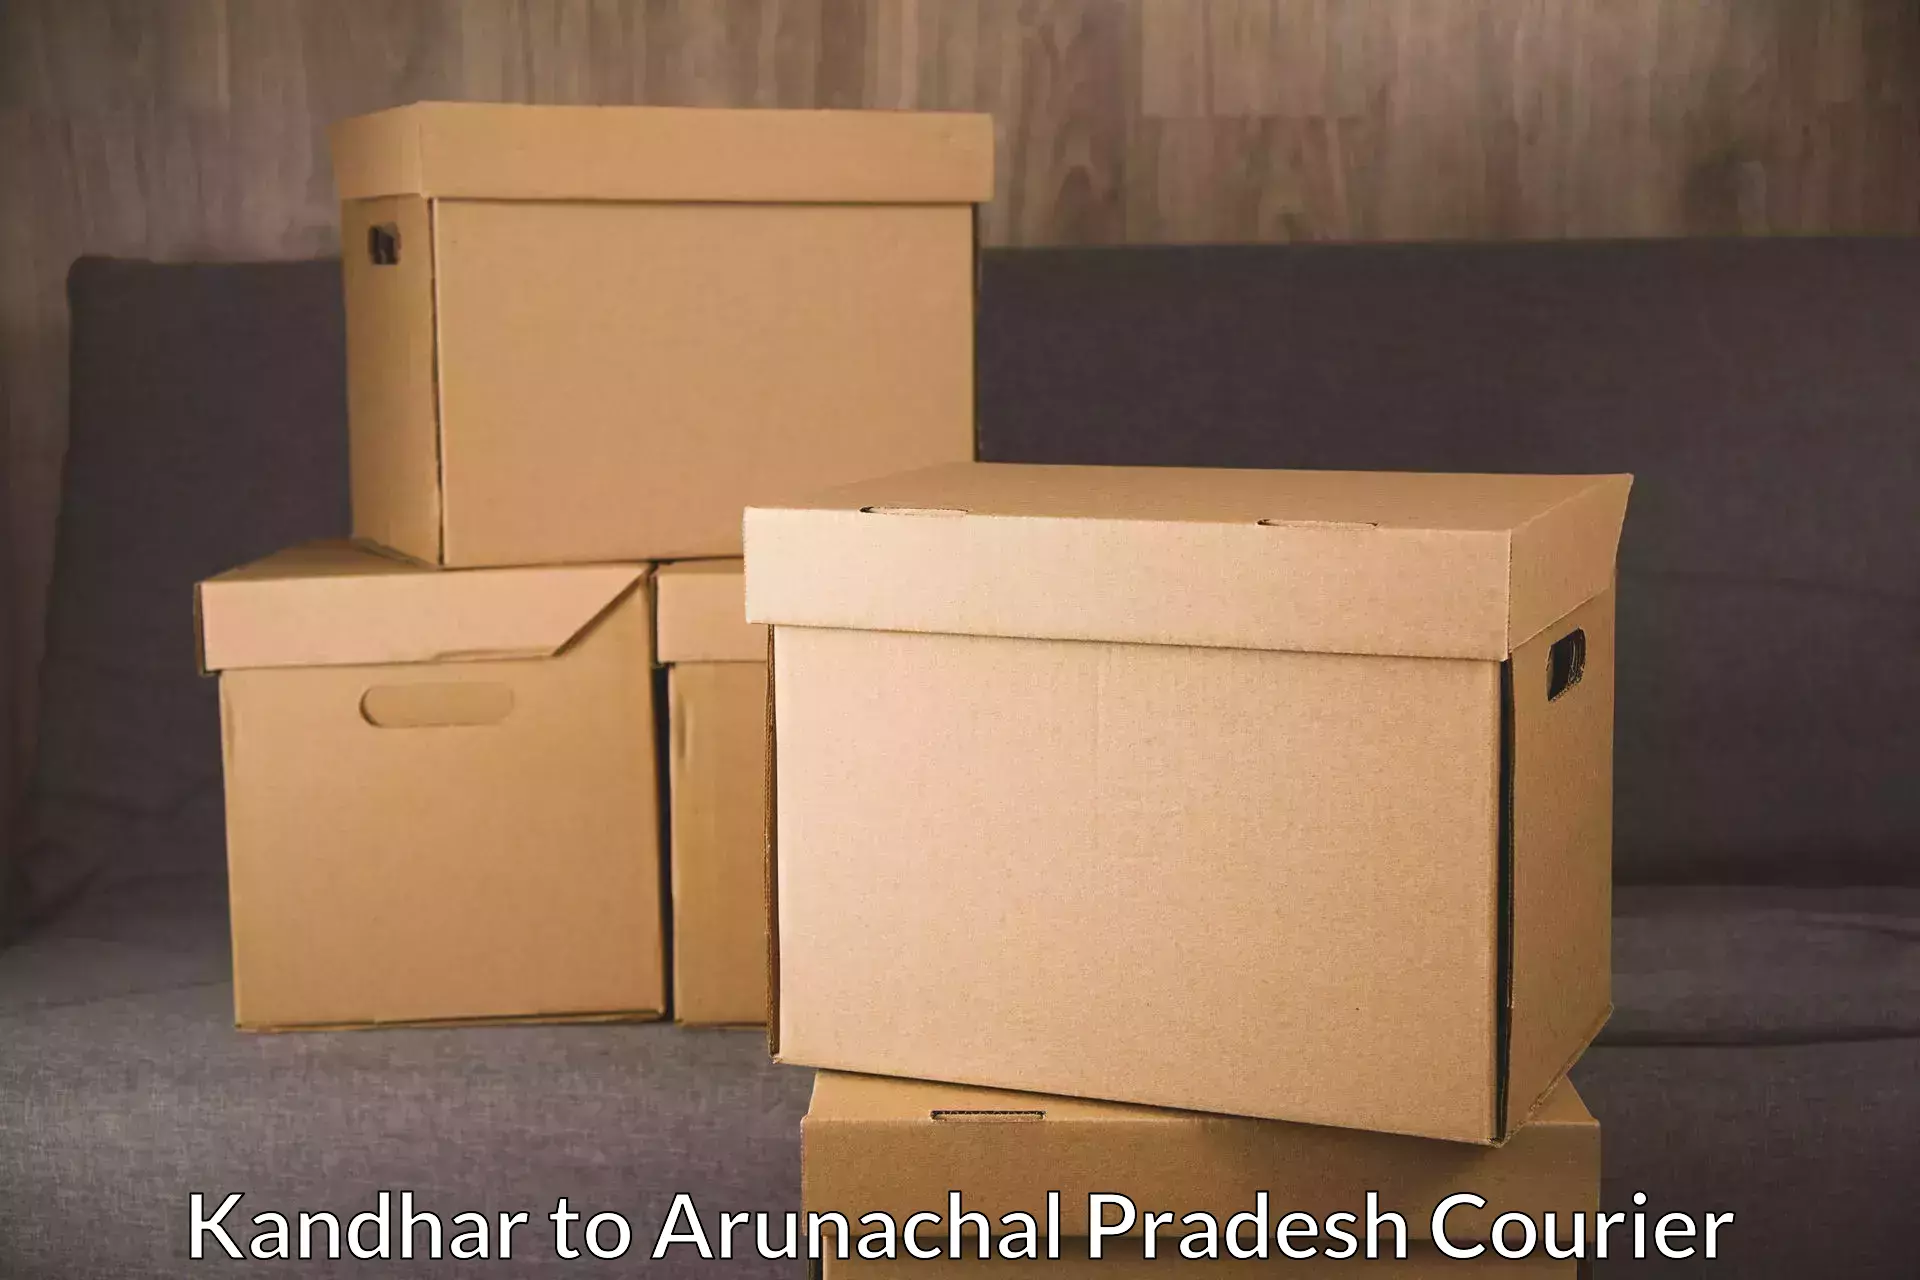 On-call courier service in Kandhar to Arunachal Pradesh